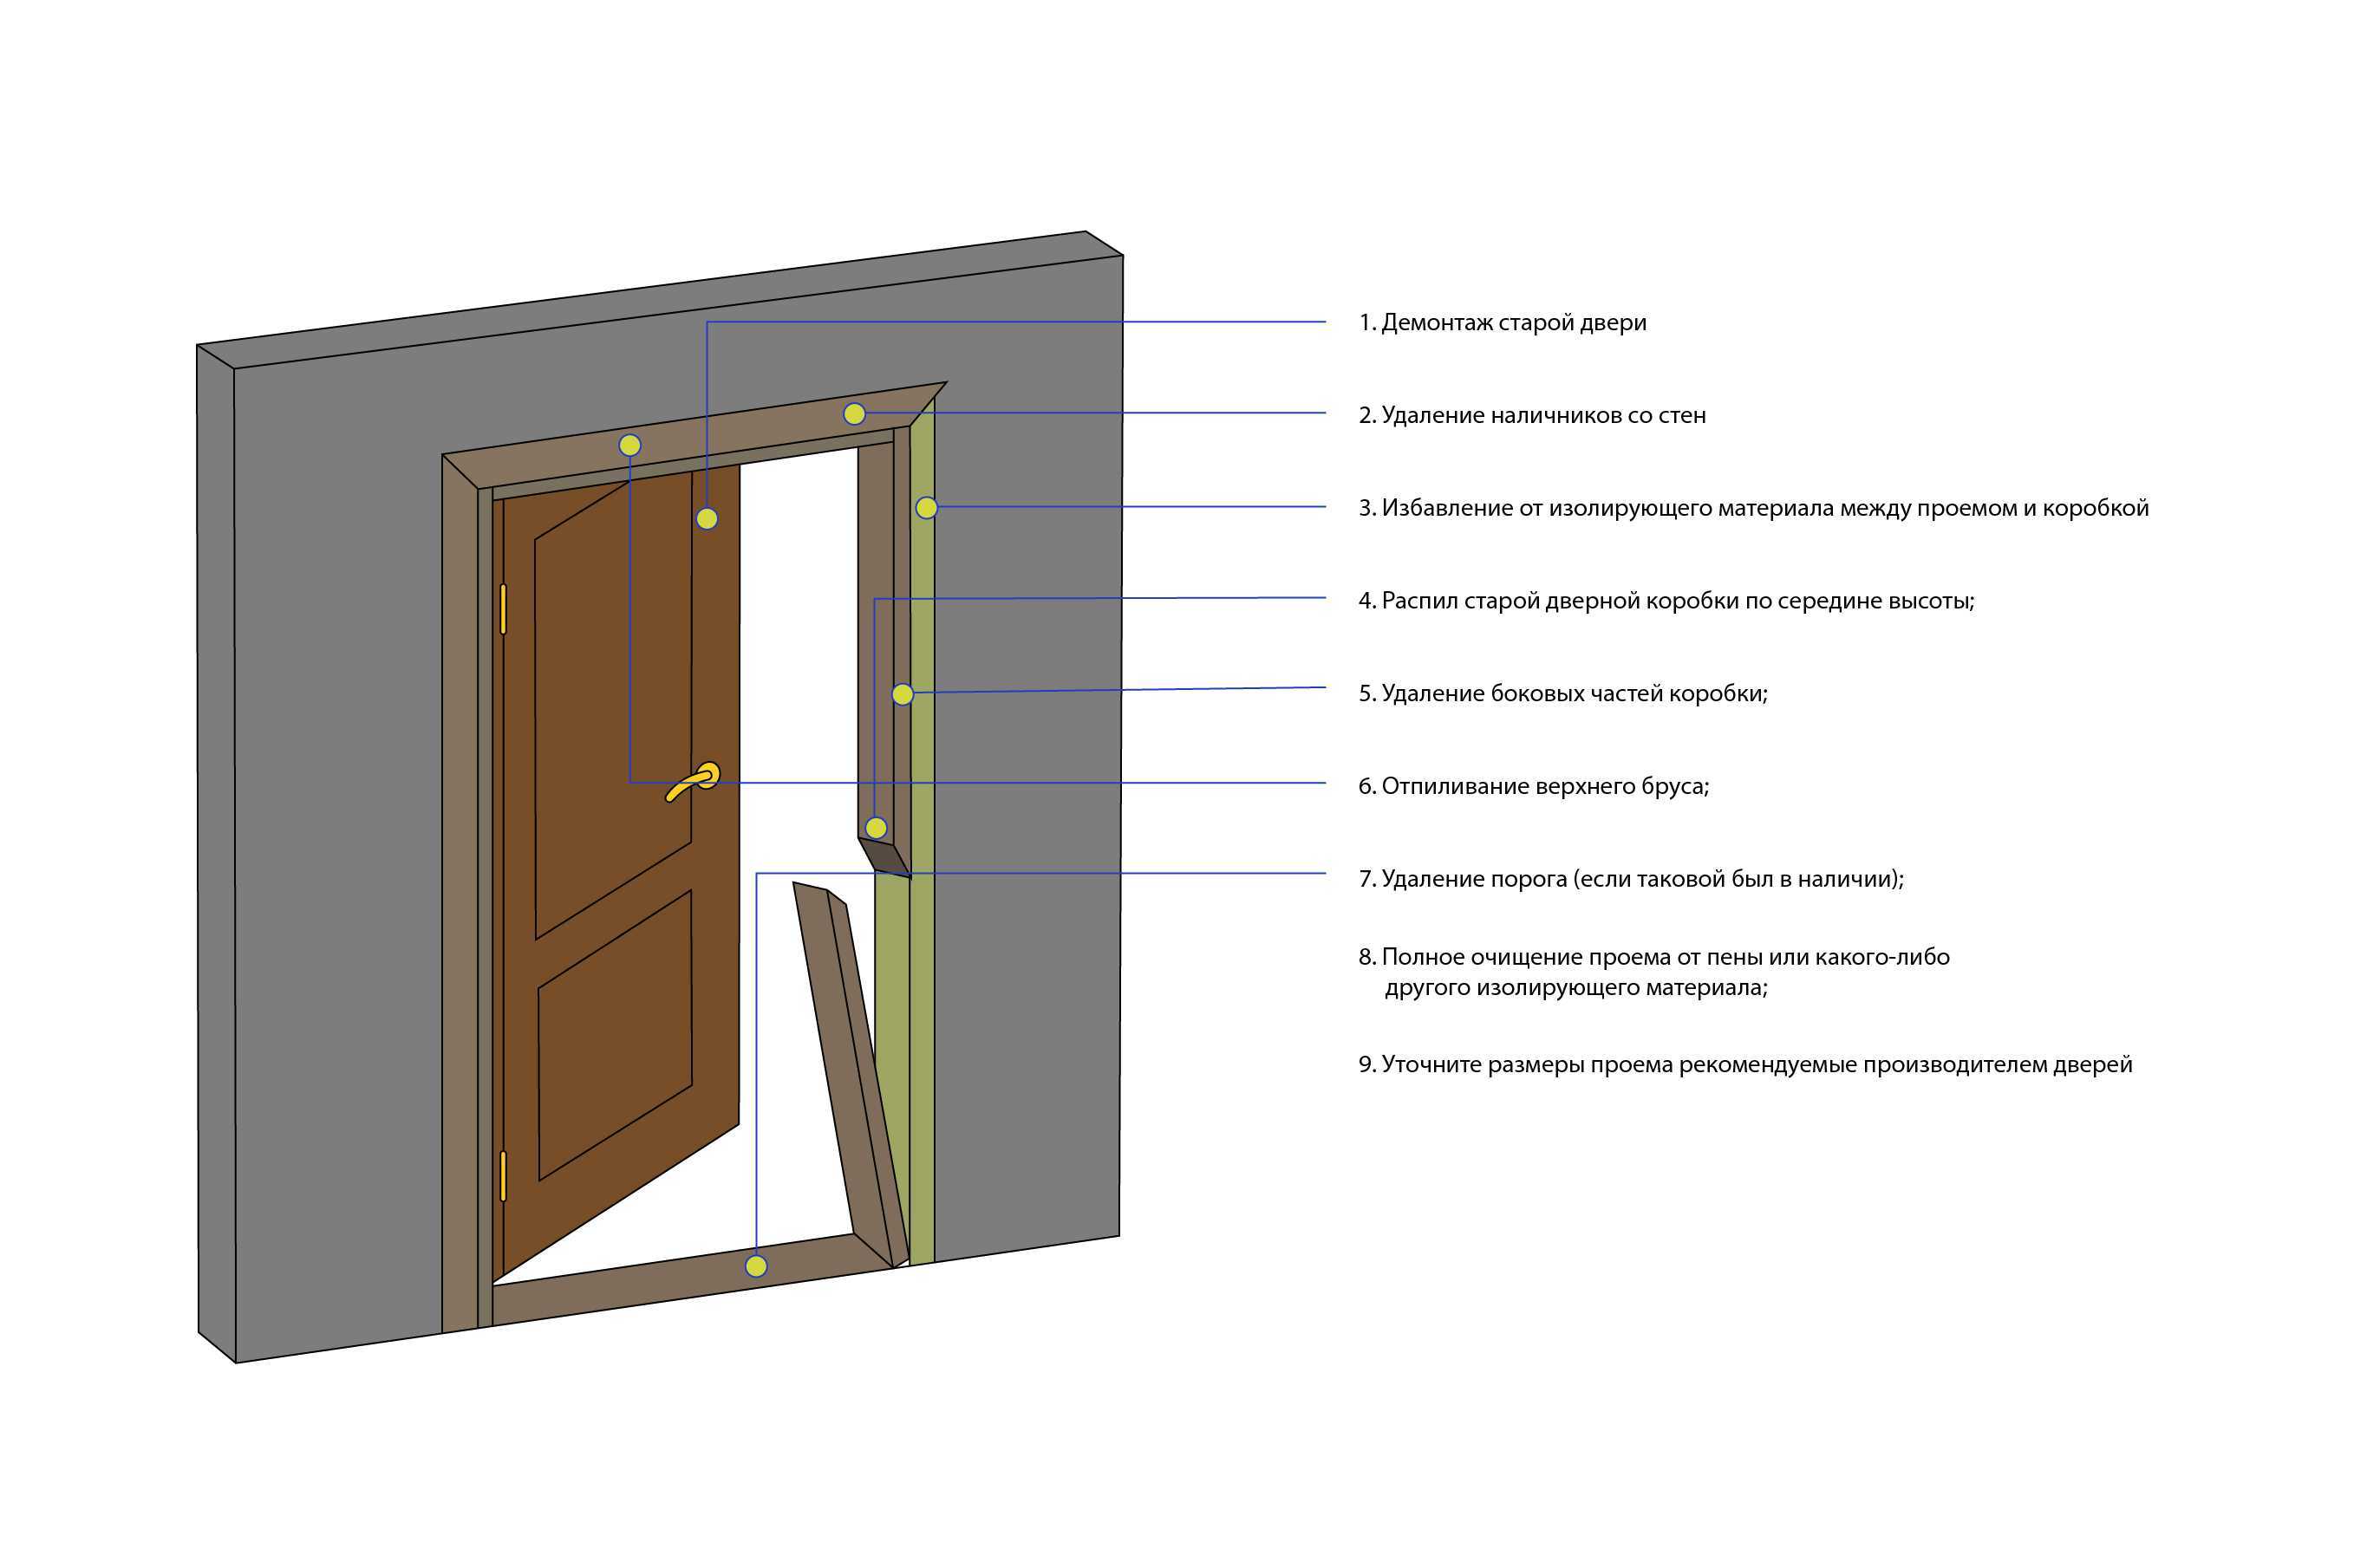 Карта входной двери. Схема установки деревянной двери. Схема установки дверной коробки. Схема монтажа межкомнатных дверей. Схема установки межкомнатной двери в проем.